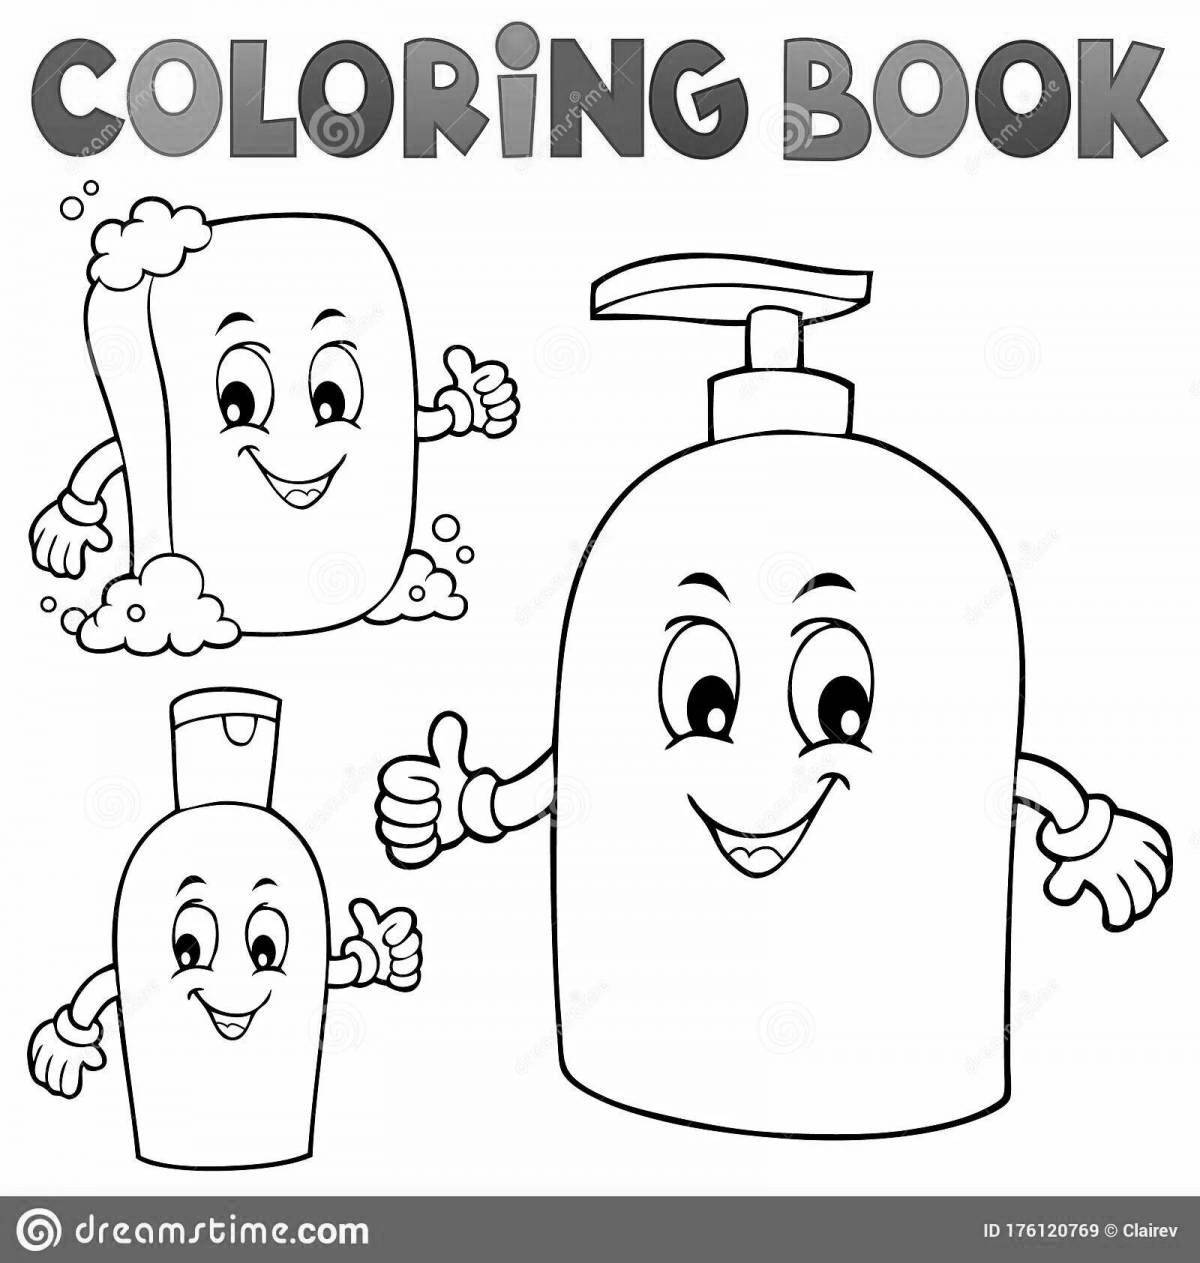 Великолепная страница раскраски шампуня для детей